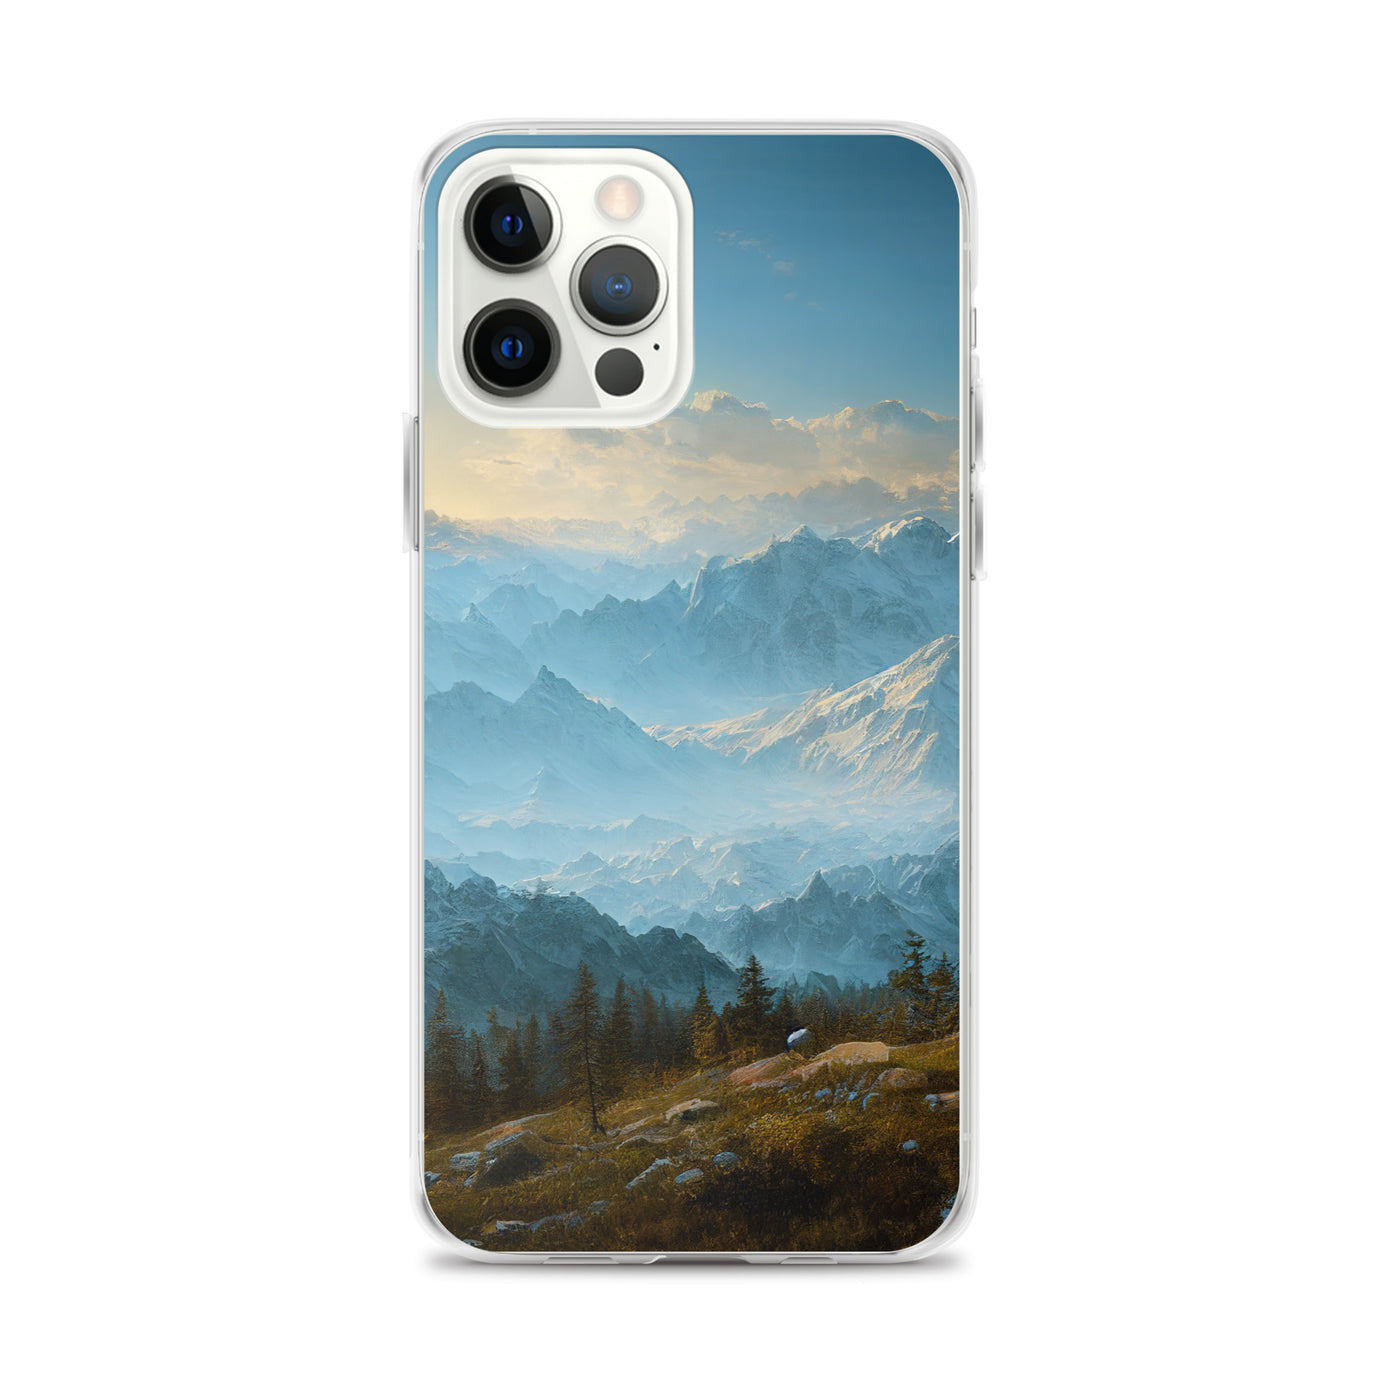 Schöne Berge mit Nebel bedeckt - Ölmalerei - iPhone Schutzhülle (durchsichtig) berge xxx iPhone 12 Pro Max